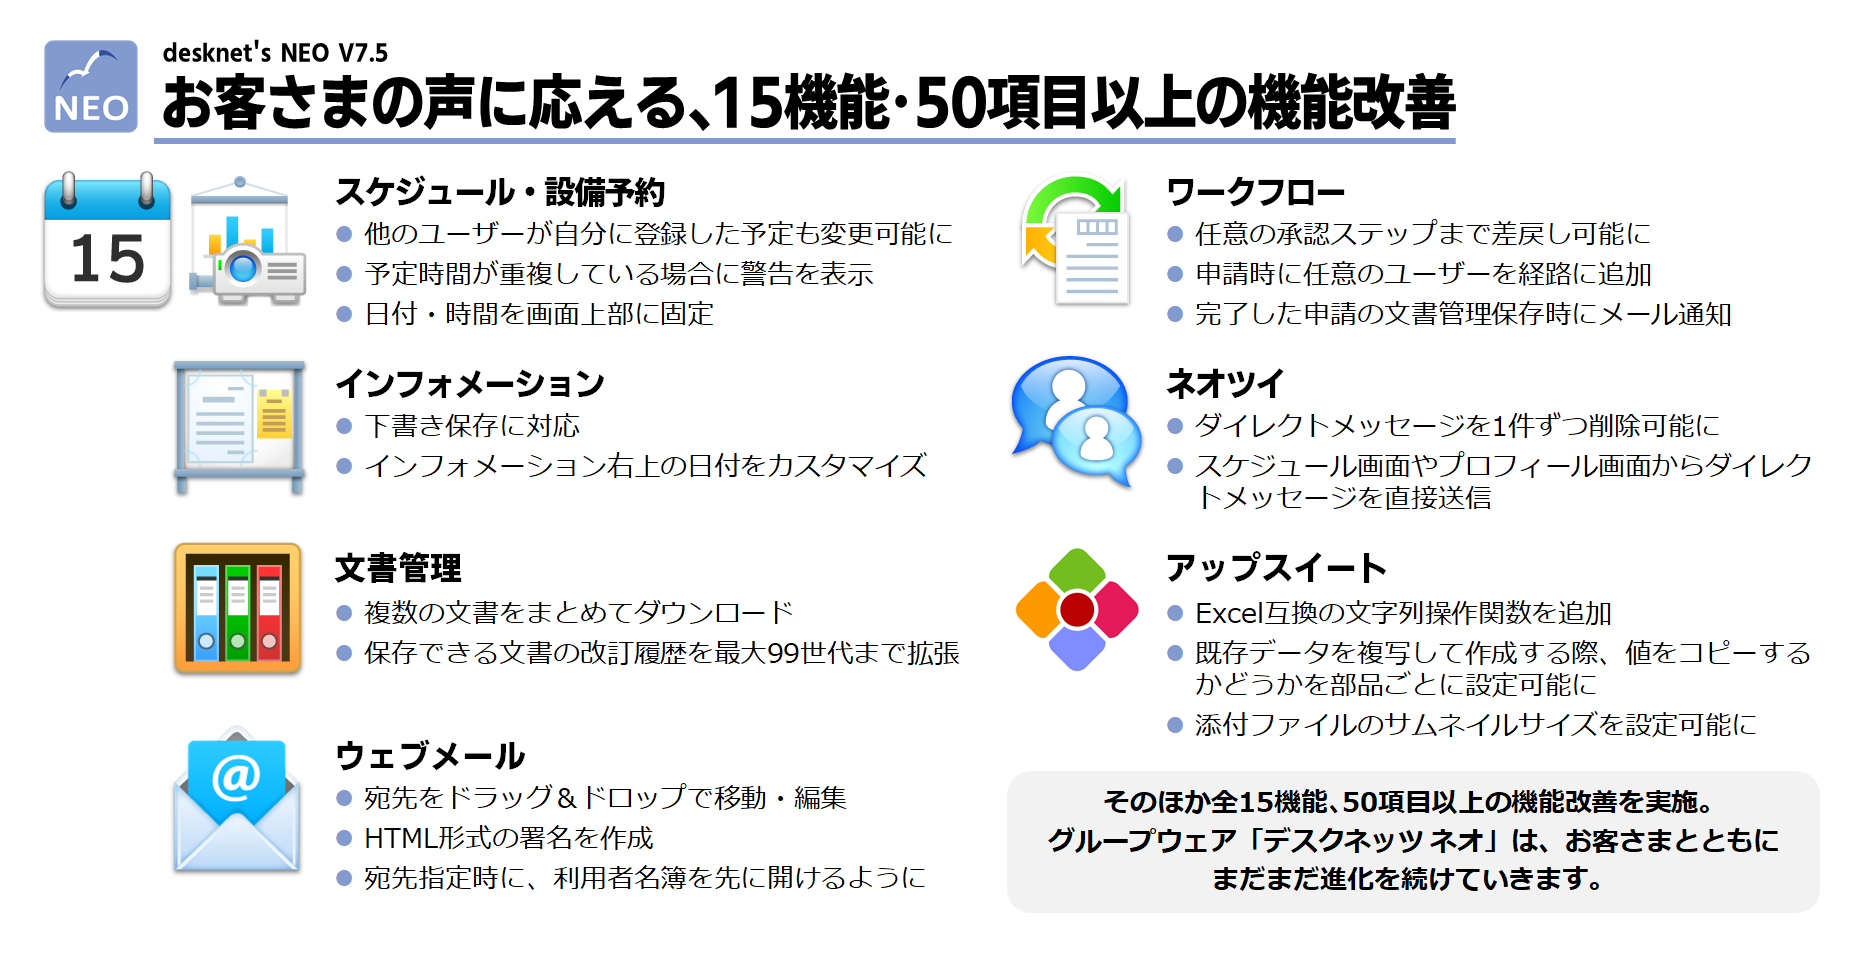 ネオジャパン、グループウェア『desknet's NEO』V7.5を提供開始